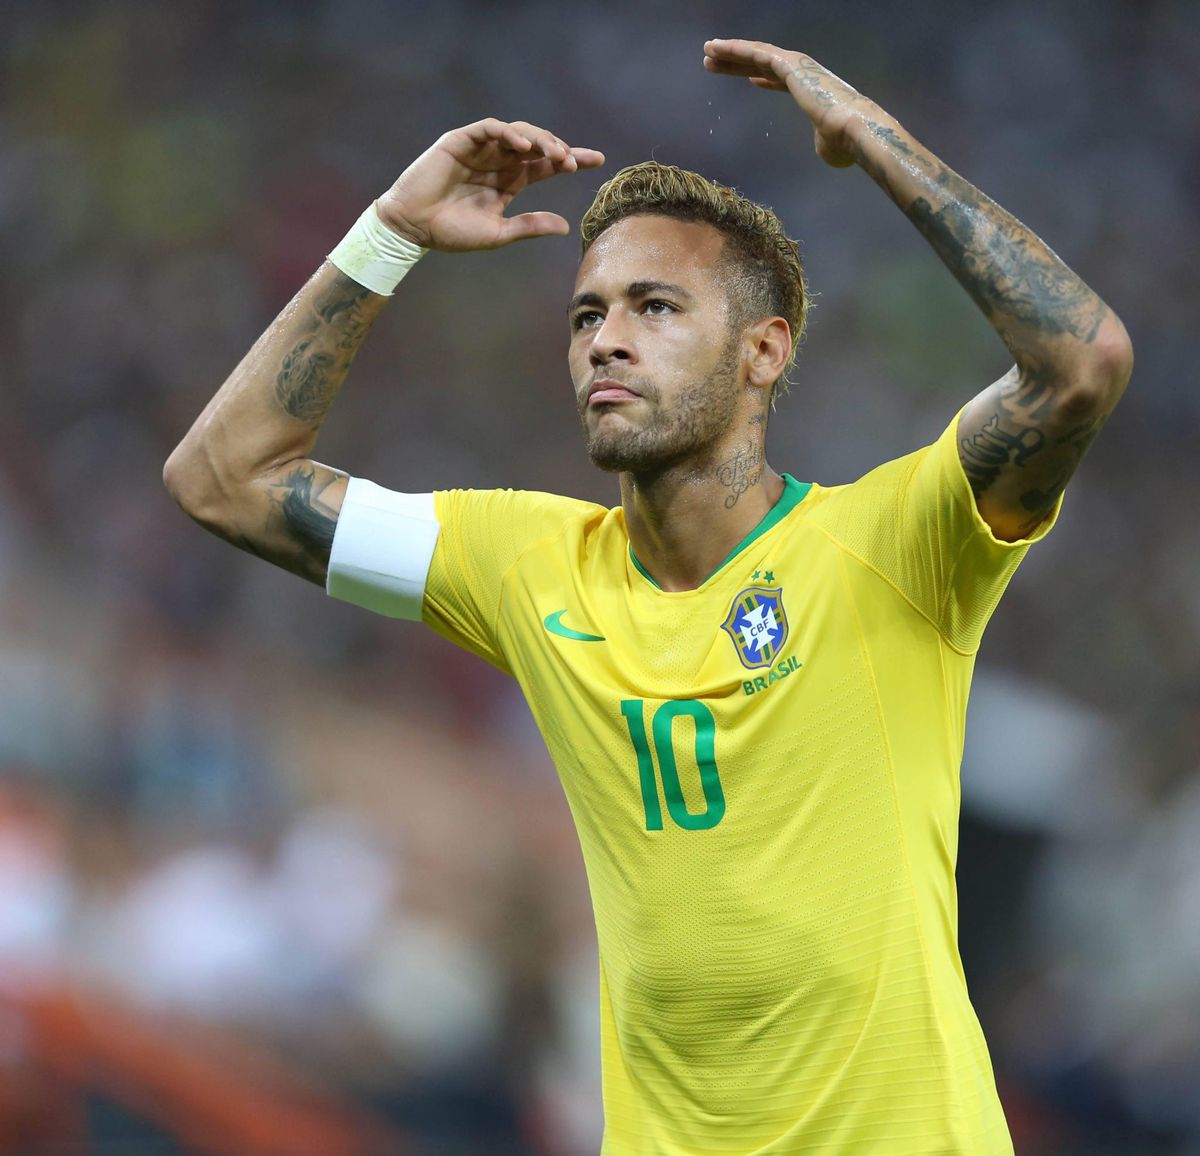 Neymar wilde liever met 7 of 11 spelen, maar Dani Alves gaf 'm nummer 10